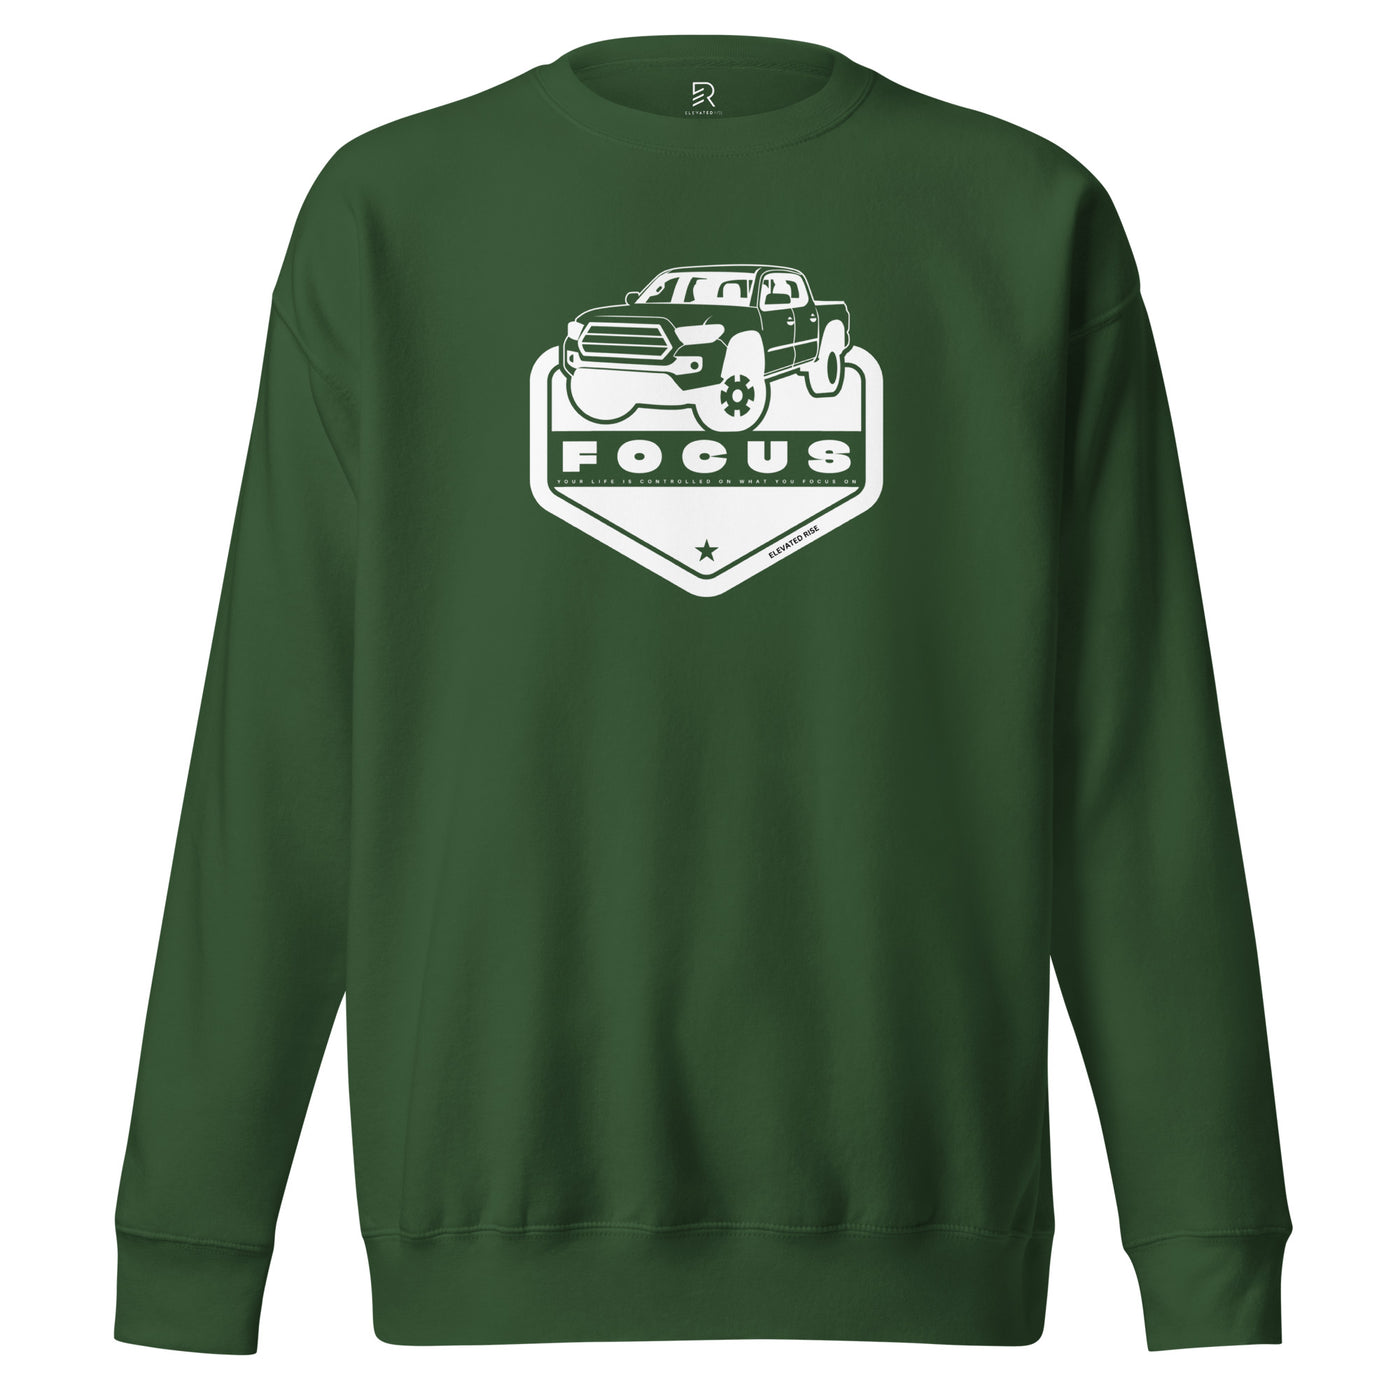 Women's Premium Green Sweatshirt - Focus On